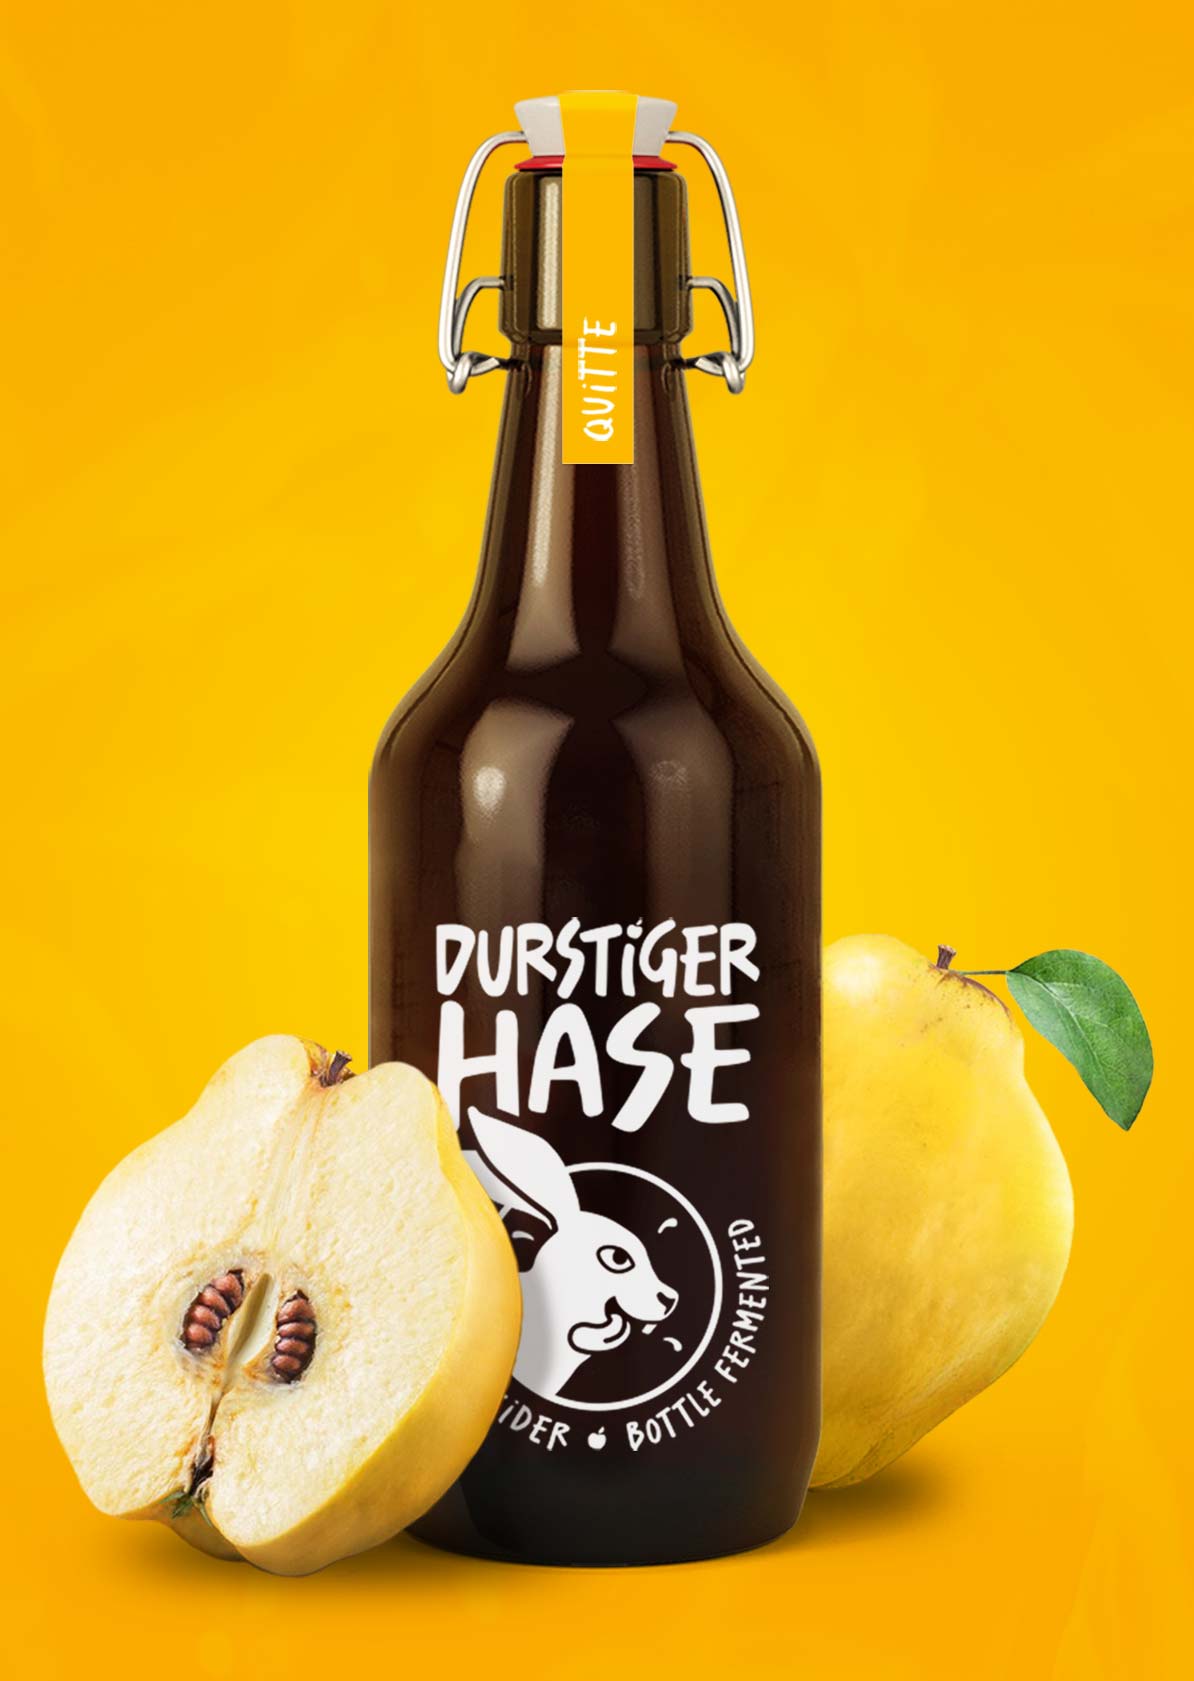 Durstiger-Hase-bottle-cap-label